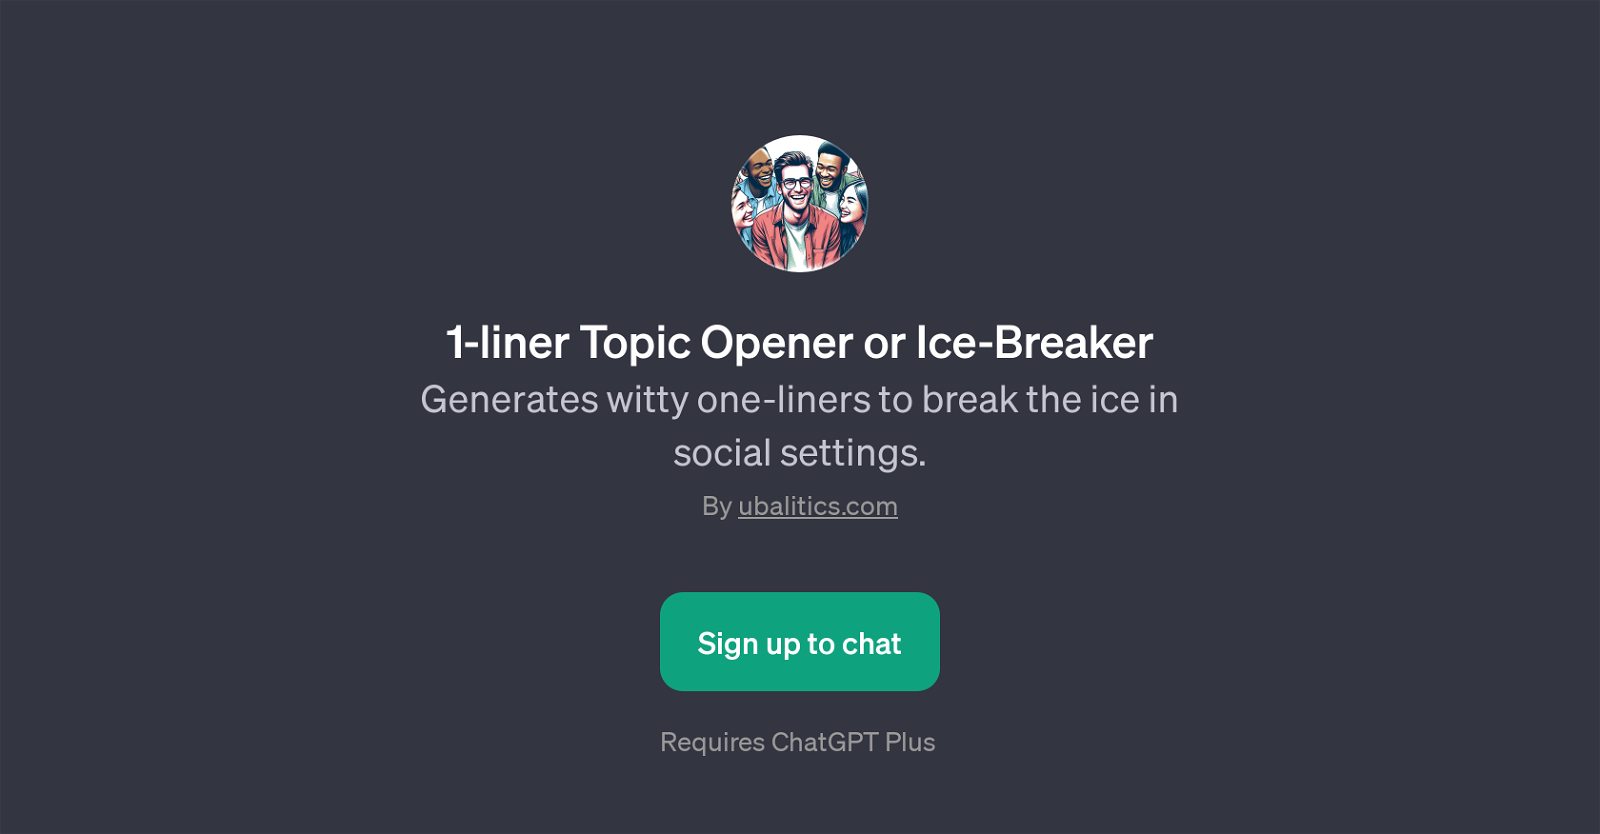 1-liner Topic Opener or Ice-Breaker website